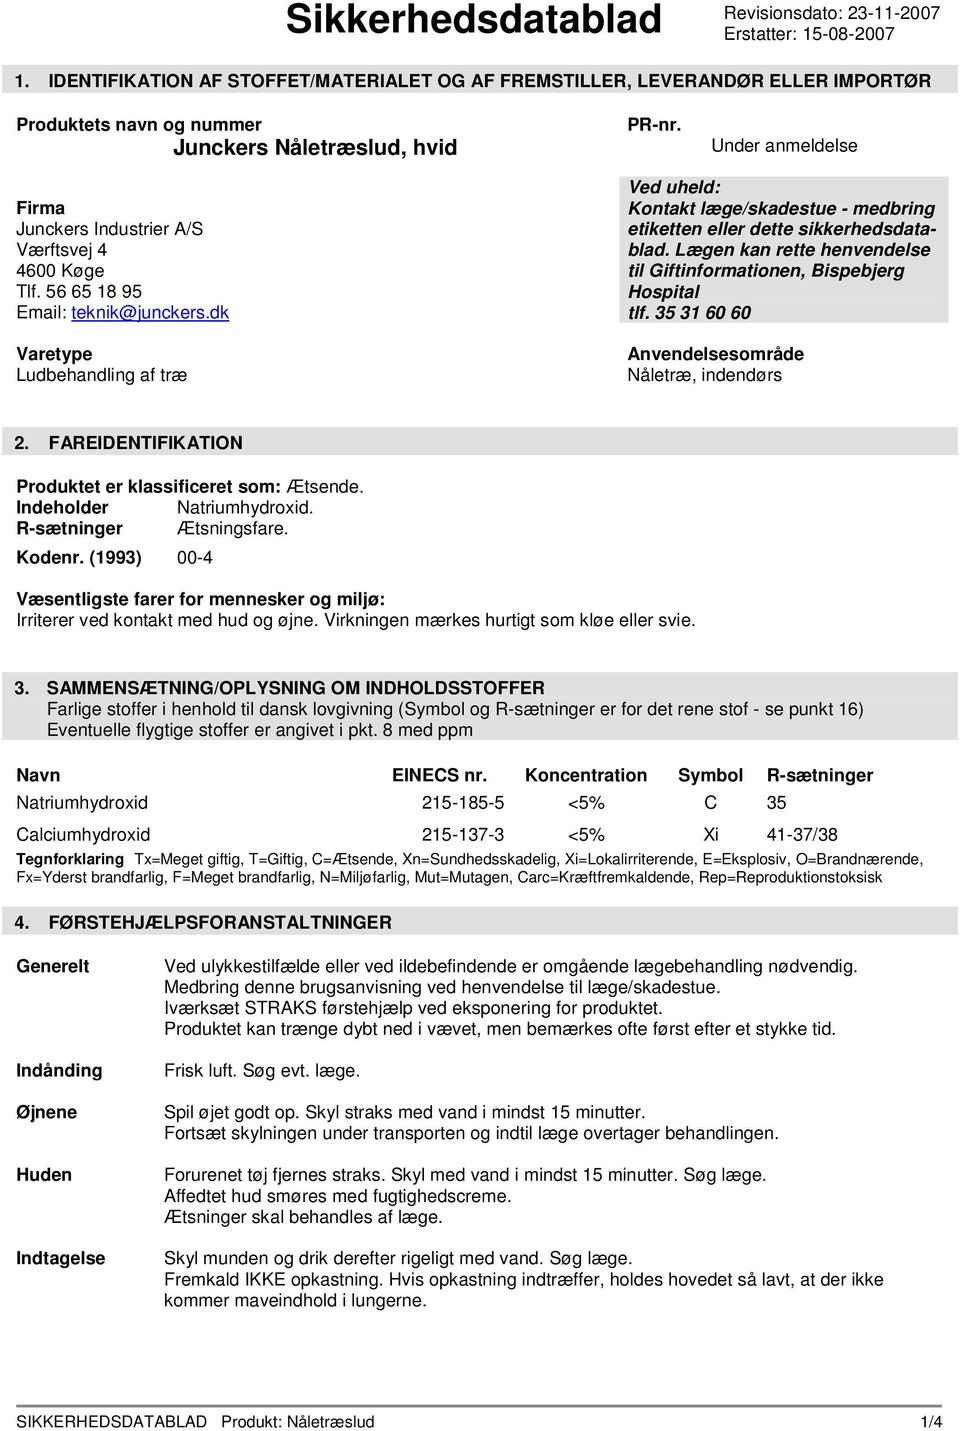 Under anmeldelse Firma Junckers Industrier A/S Værftsvej 4 4600 Køge Tlf. 56 65 18 95 Email: teknik@junckers.